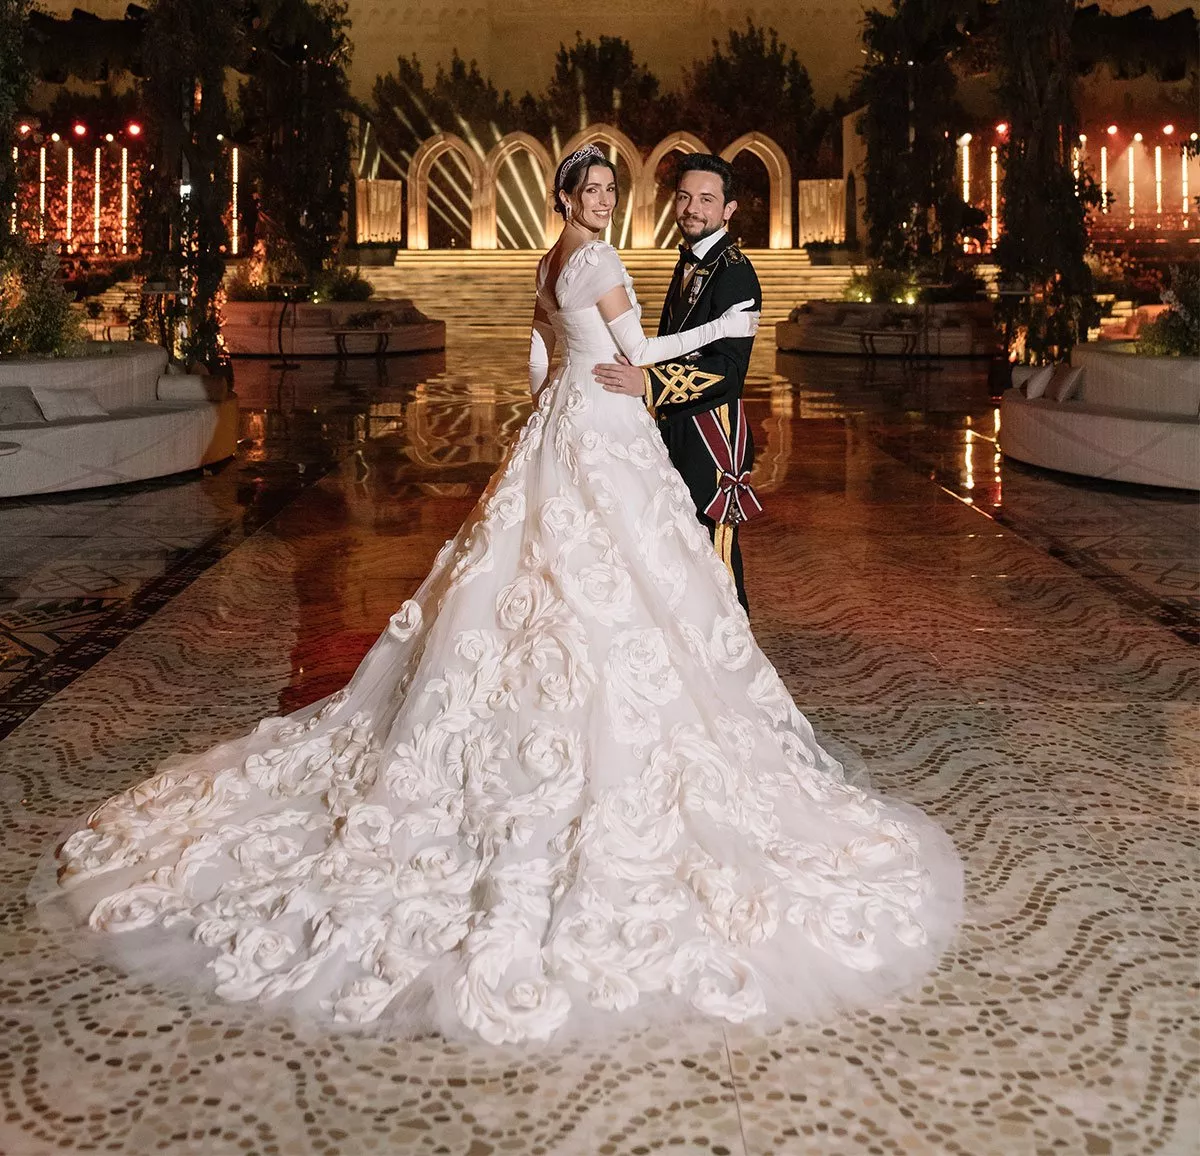 طلة رجوة آل سيف الثانية في حفل زفافها بفستان من Dolce & Gabbana